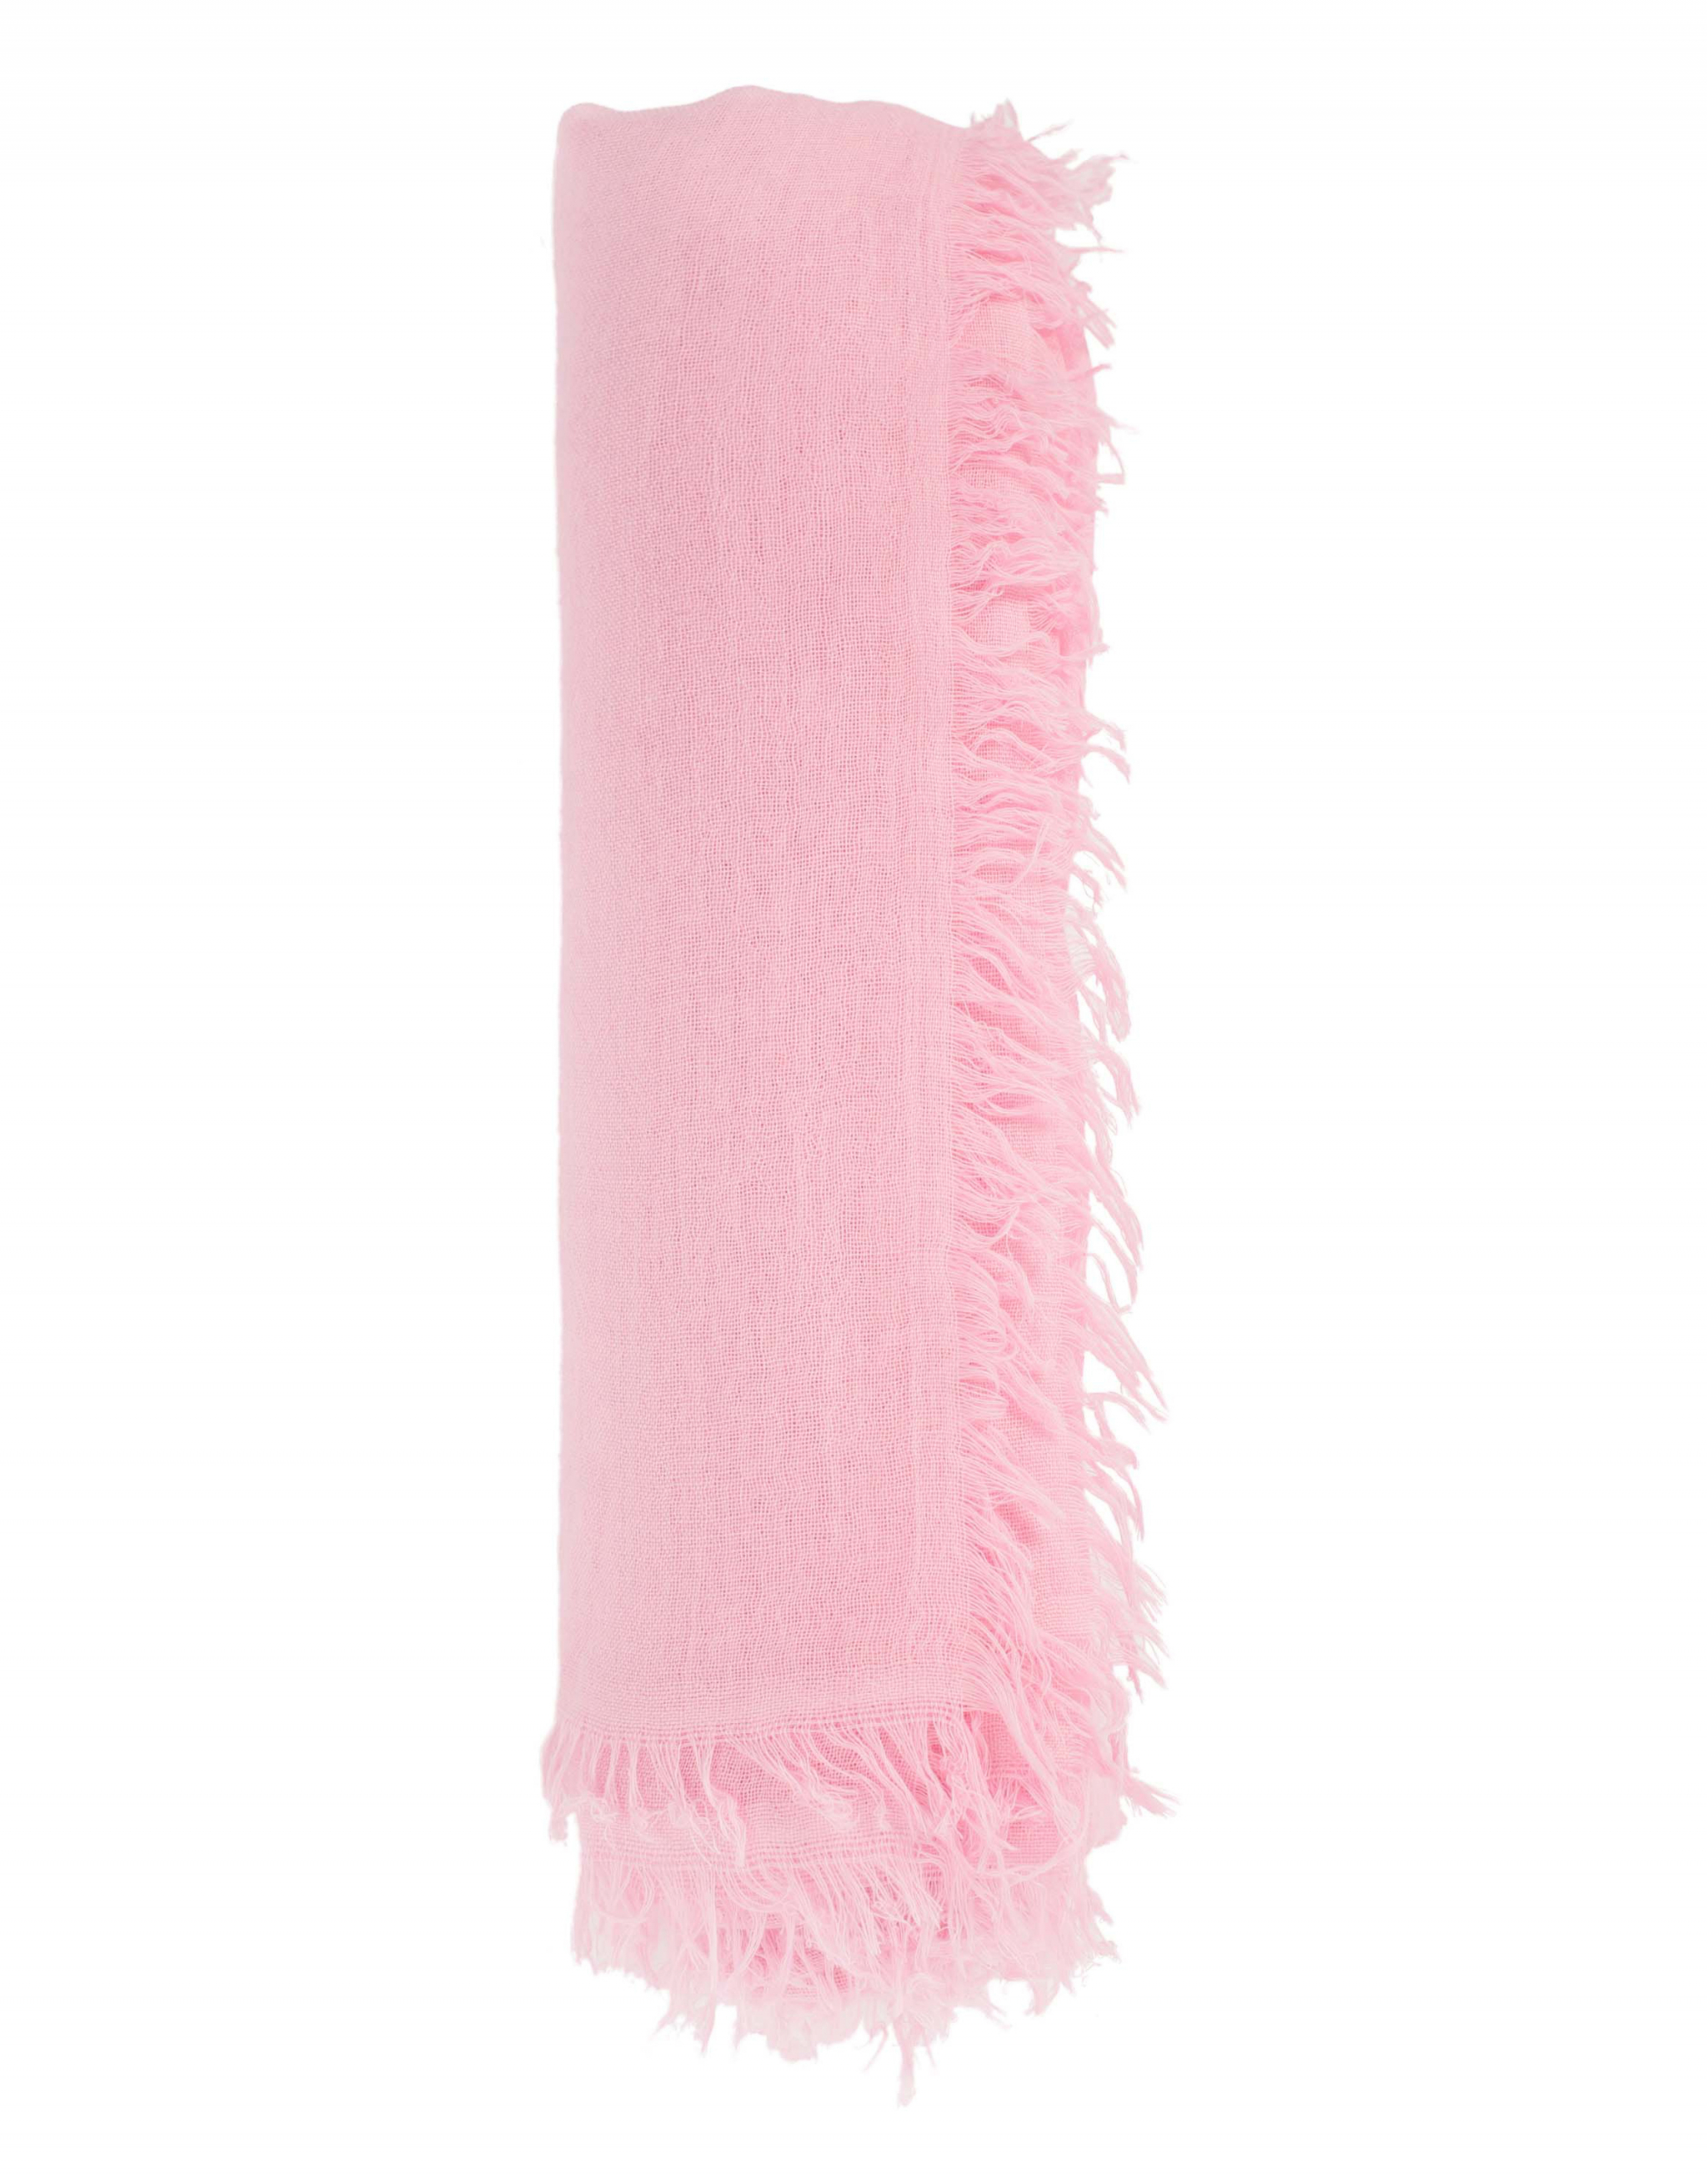 Розовый кашемировый шарф Ann Demeulemeester 2001-8630-W-408-031, размер One Size